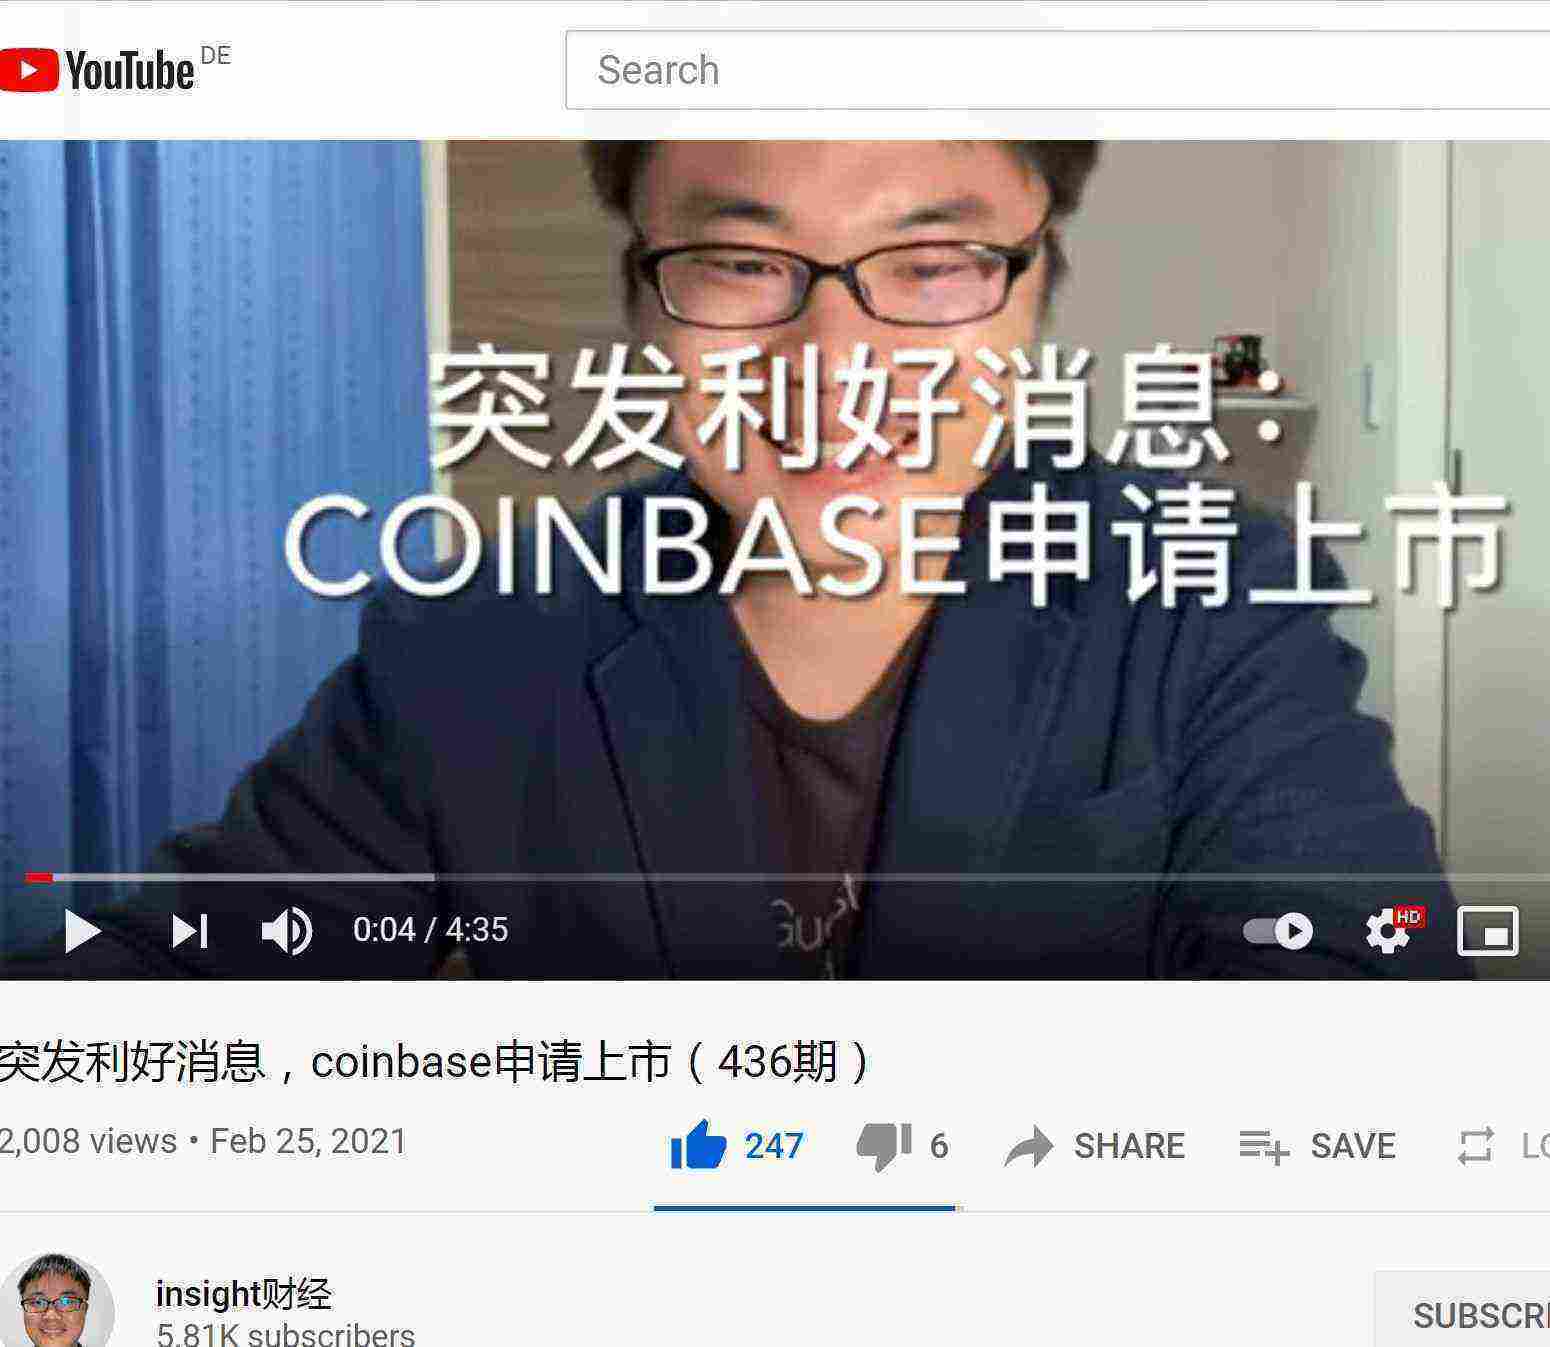 突发利好消息，coinbase申请上市（436期）-YouTube.jpg